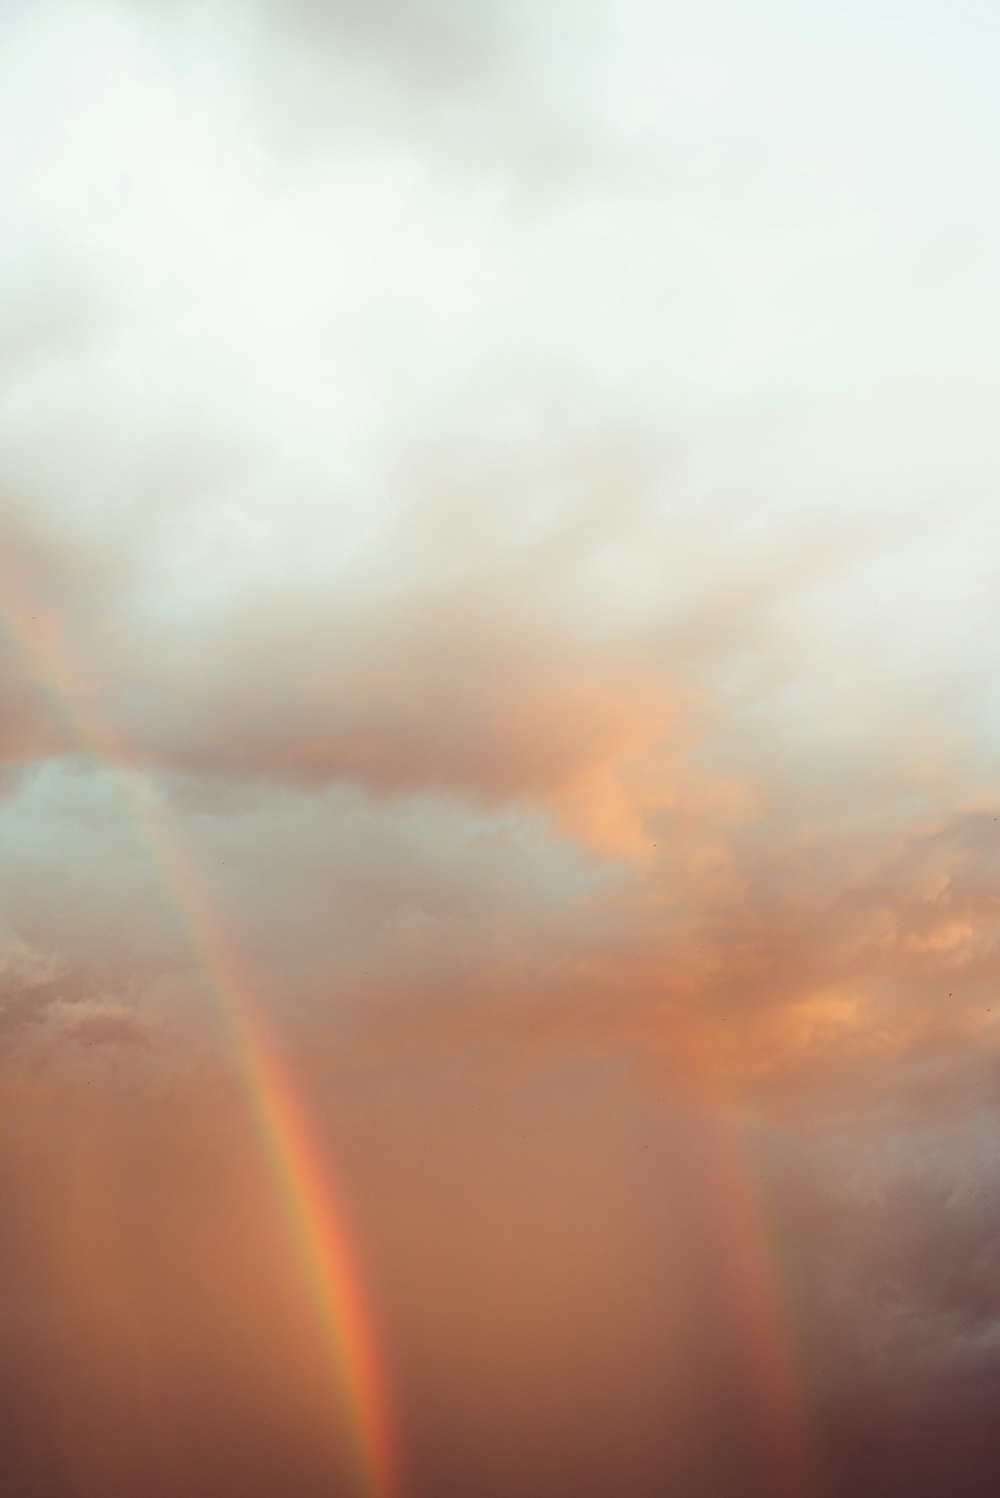 a rainbow appears in the sky over a beach